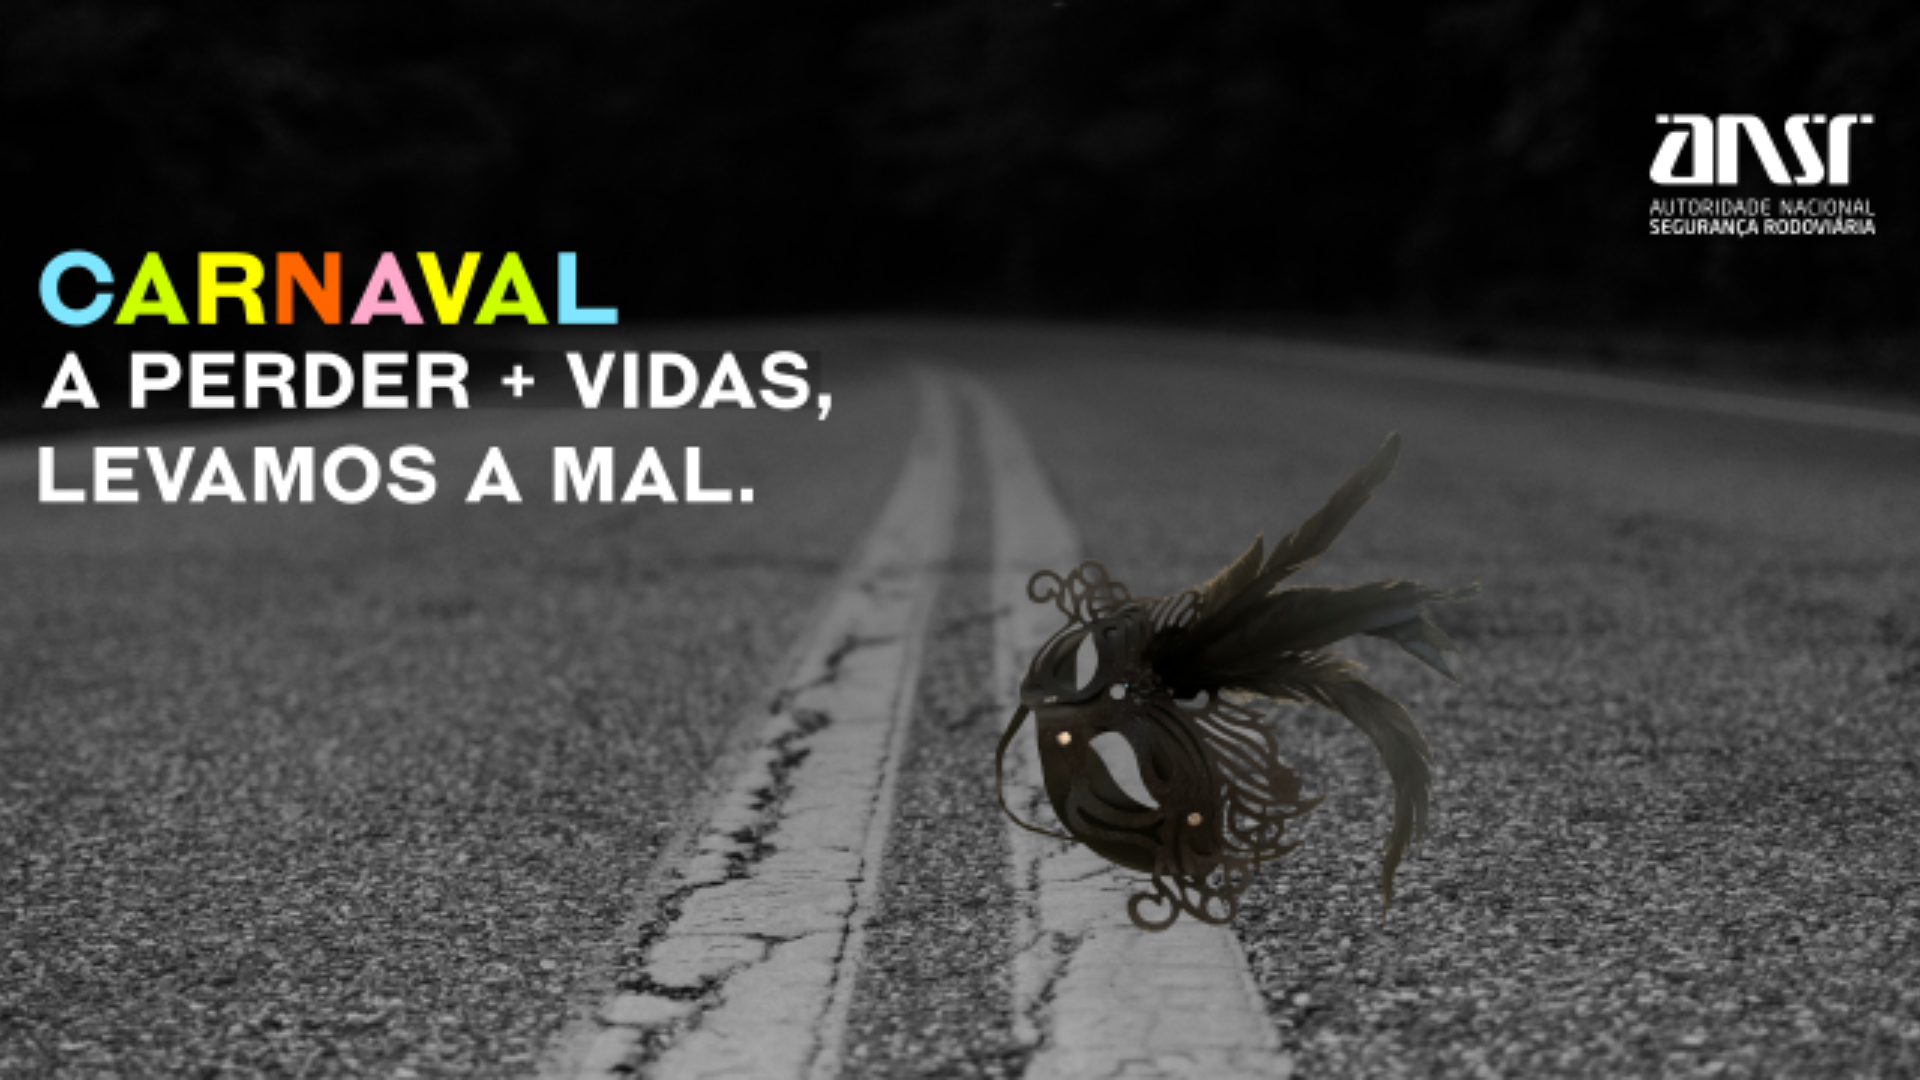 Alcochete associa-se à campanha Carnaval “A perder + vidas levamos a mal” 